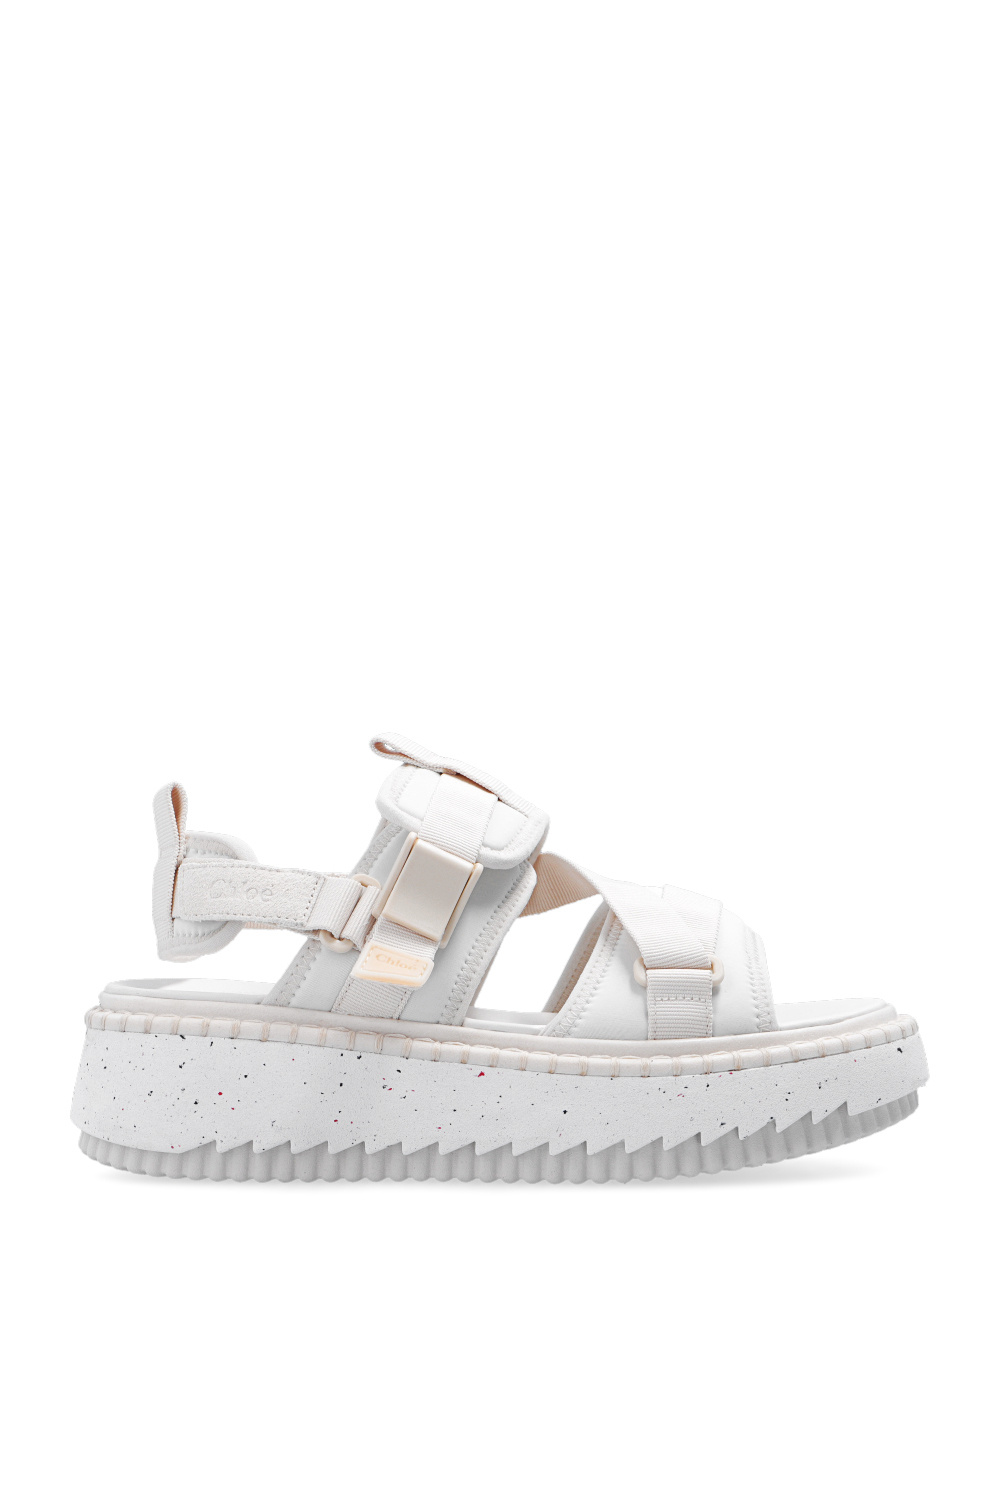 ‘Lilli’ platform sandals Chloé - Vitkac Australia